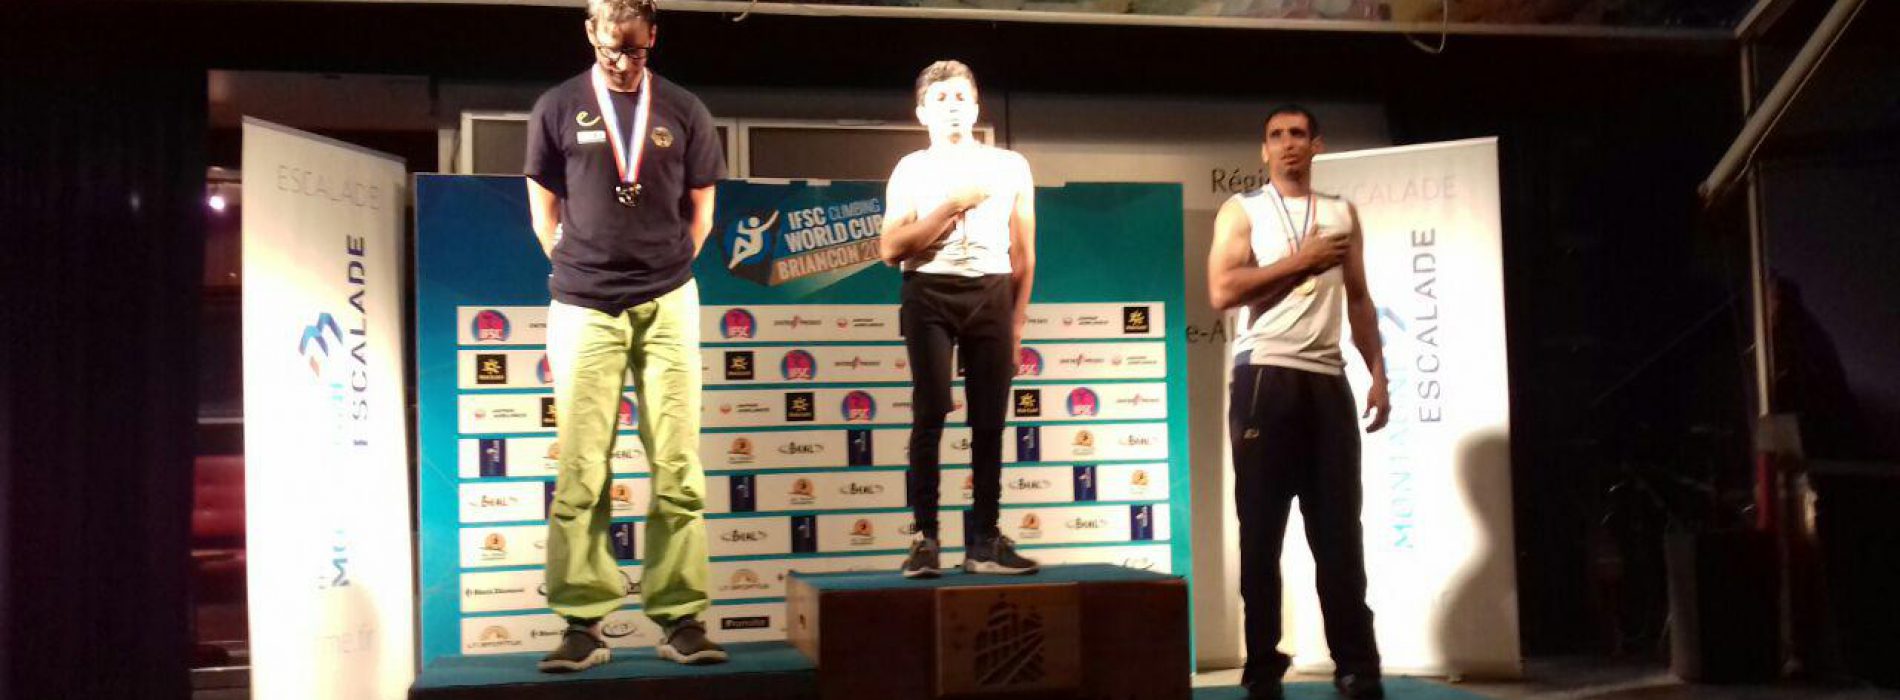 کسب مدال طلا و برنز جام جهانی معلولین در فرانسه توسط بهنام خلجی و امیر سبزی